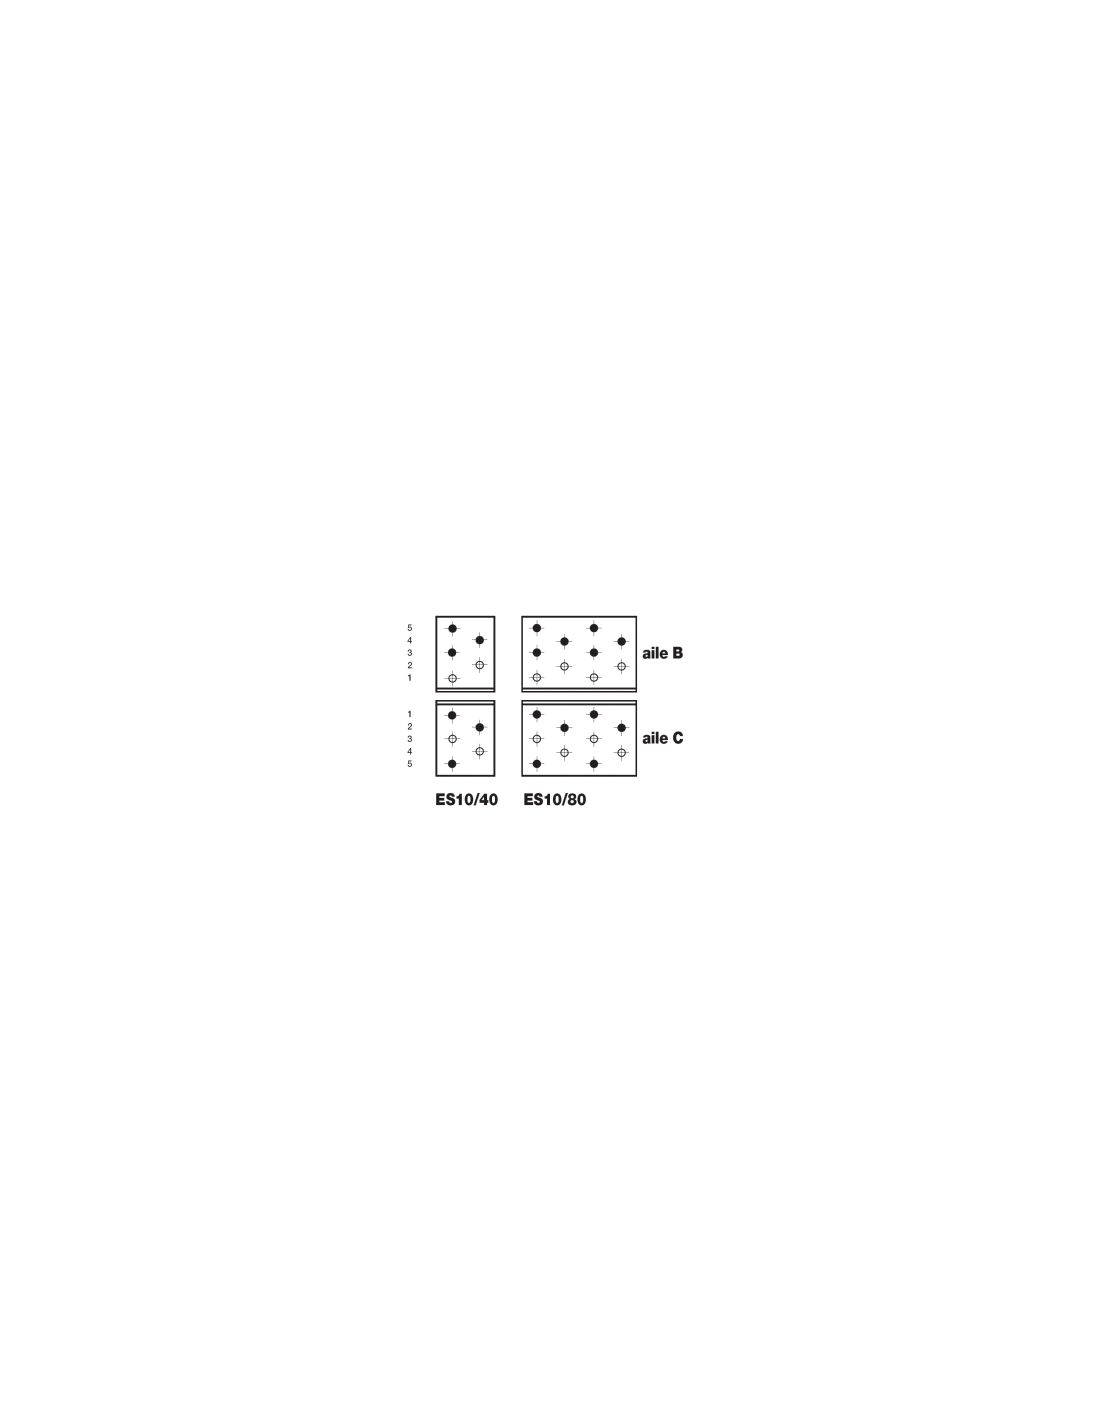 Visuel schéma exemple de clouage en fonction de la taille des équerres 10/40 et 10/80